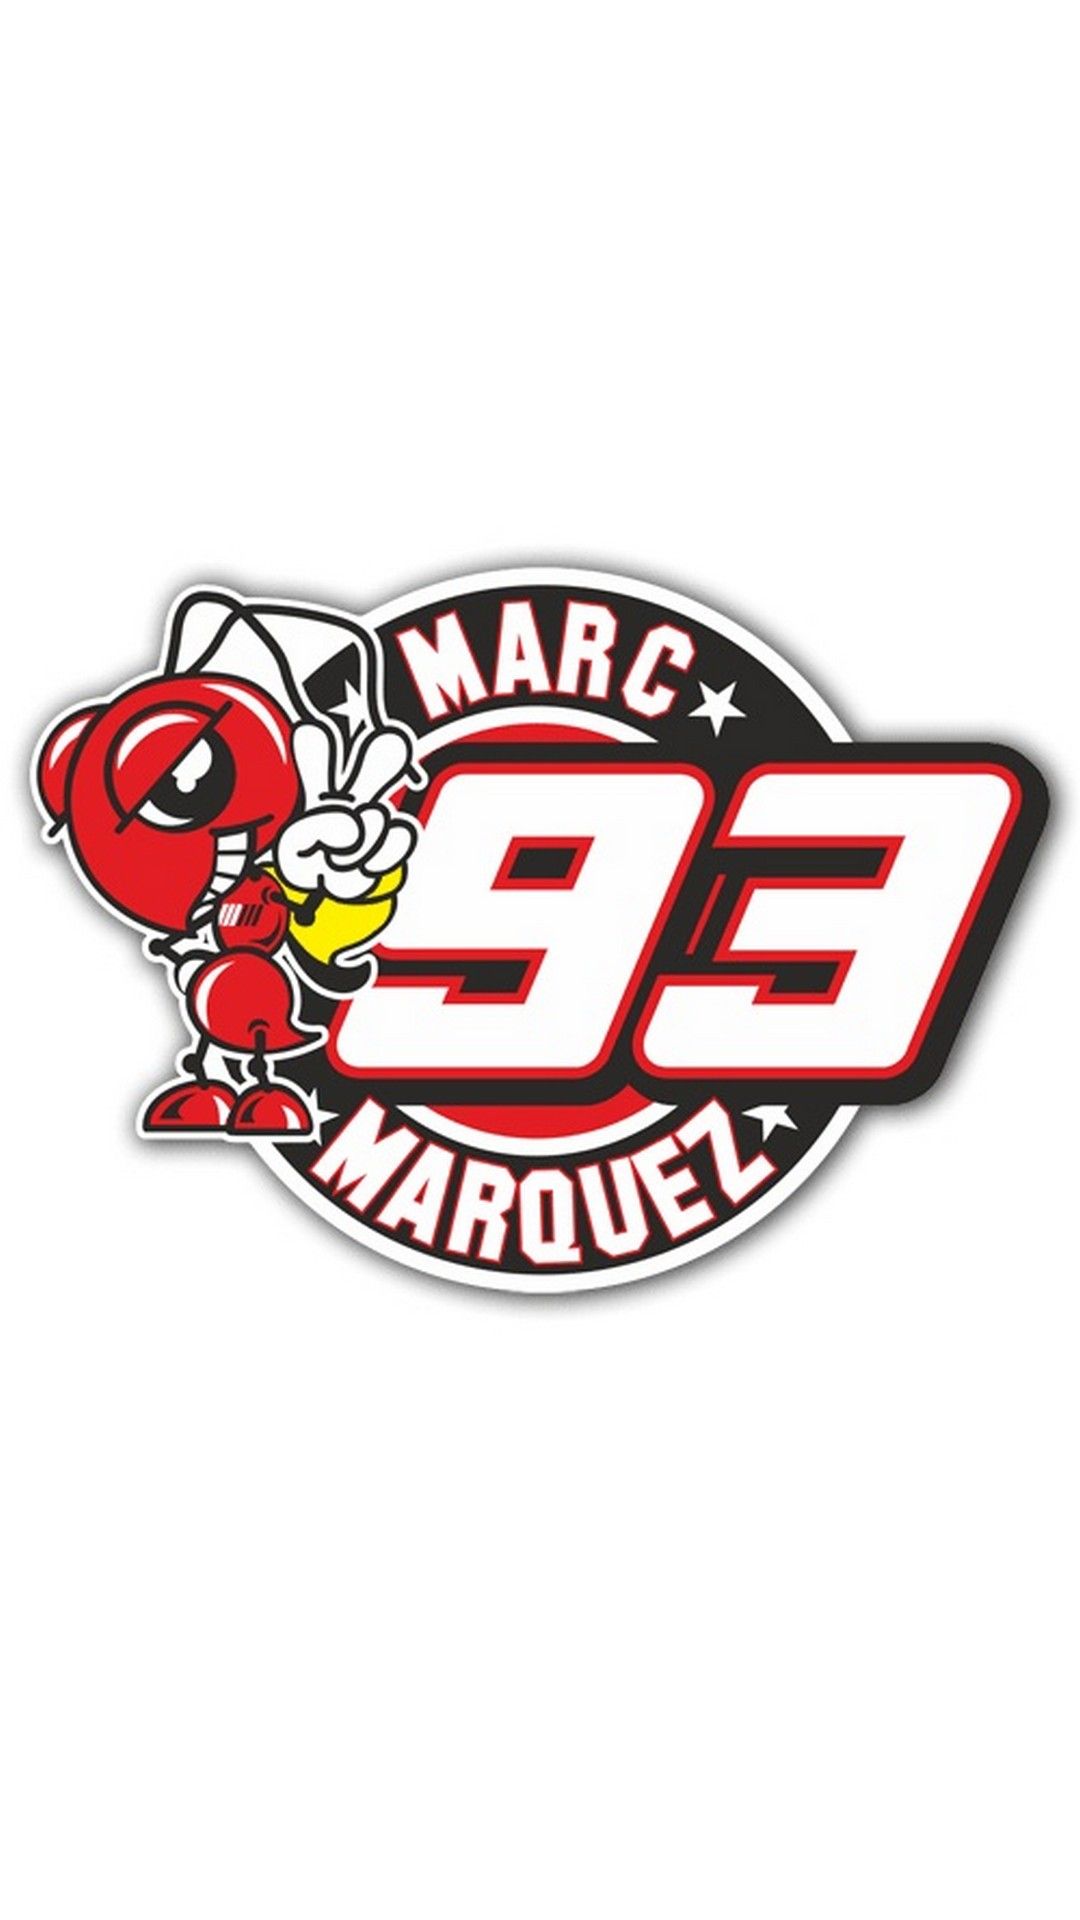 Marc Marquez Logo Wallpaper - KibrisPDR